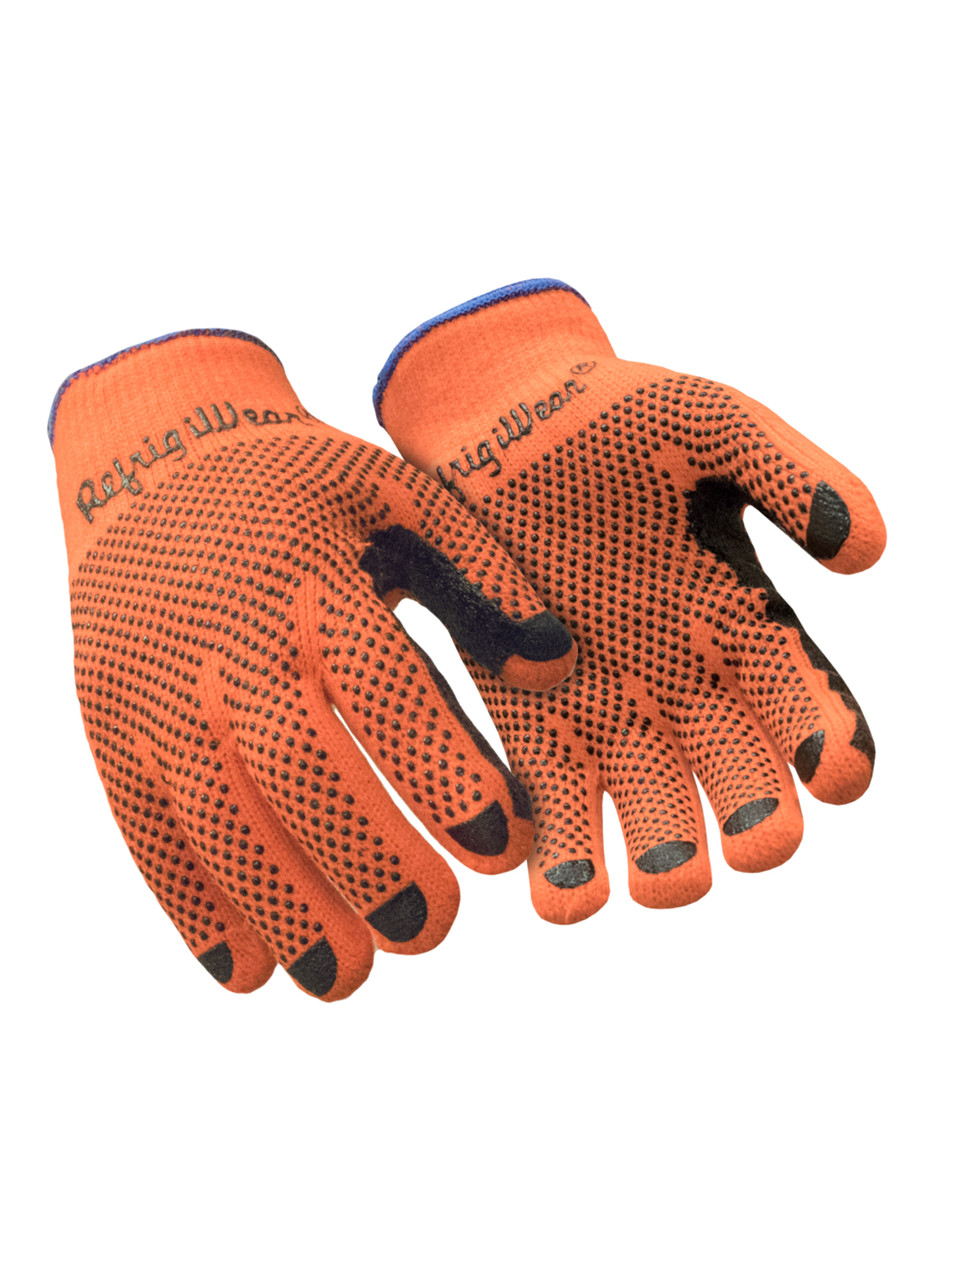 Grip Dot Gloves - Medium